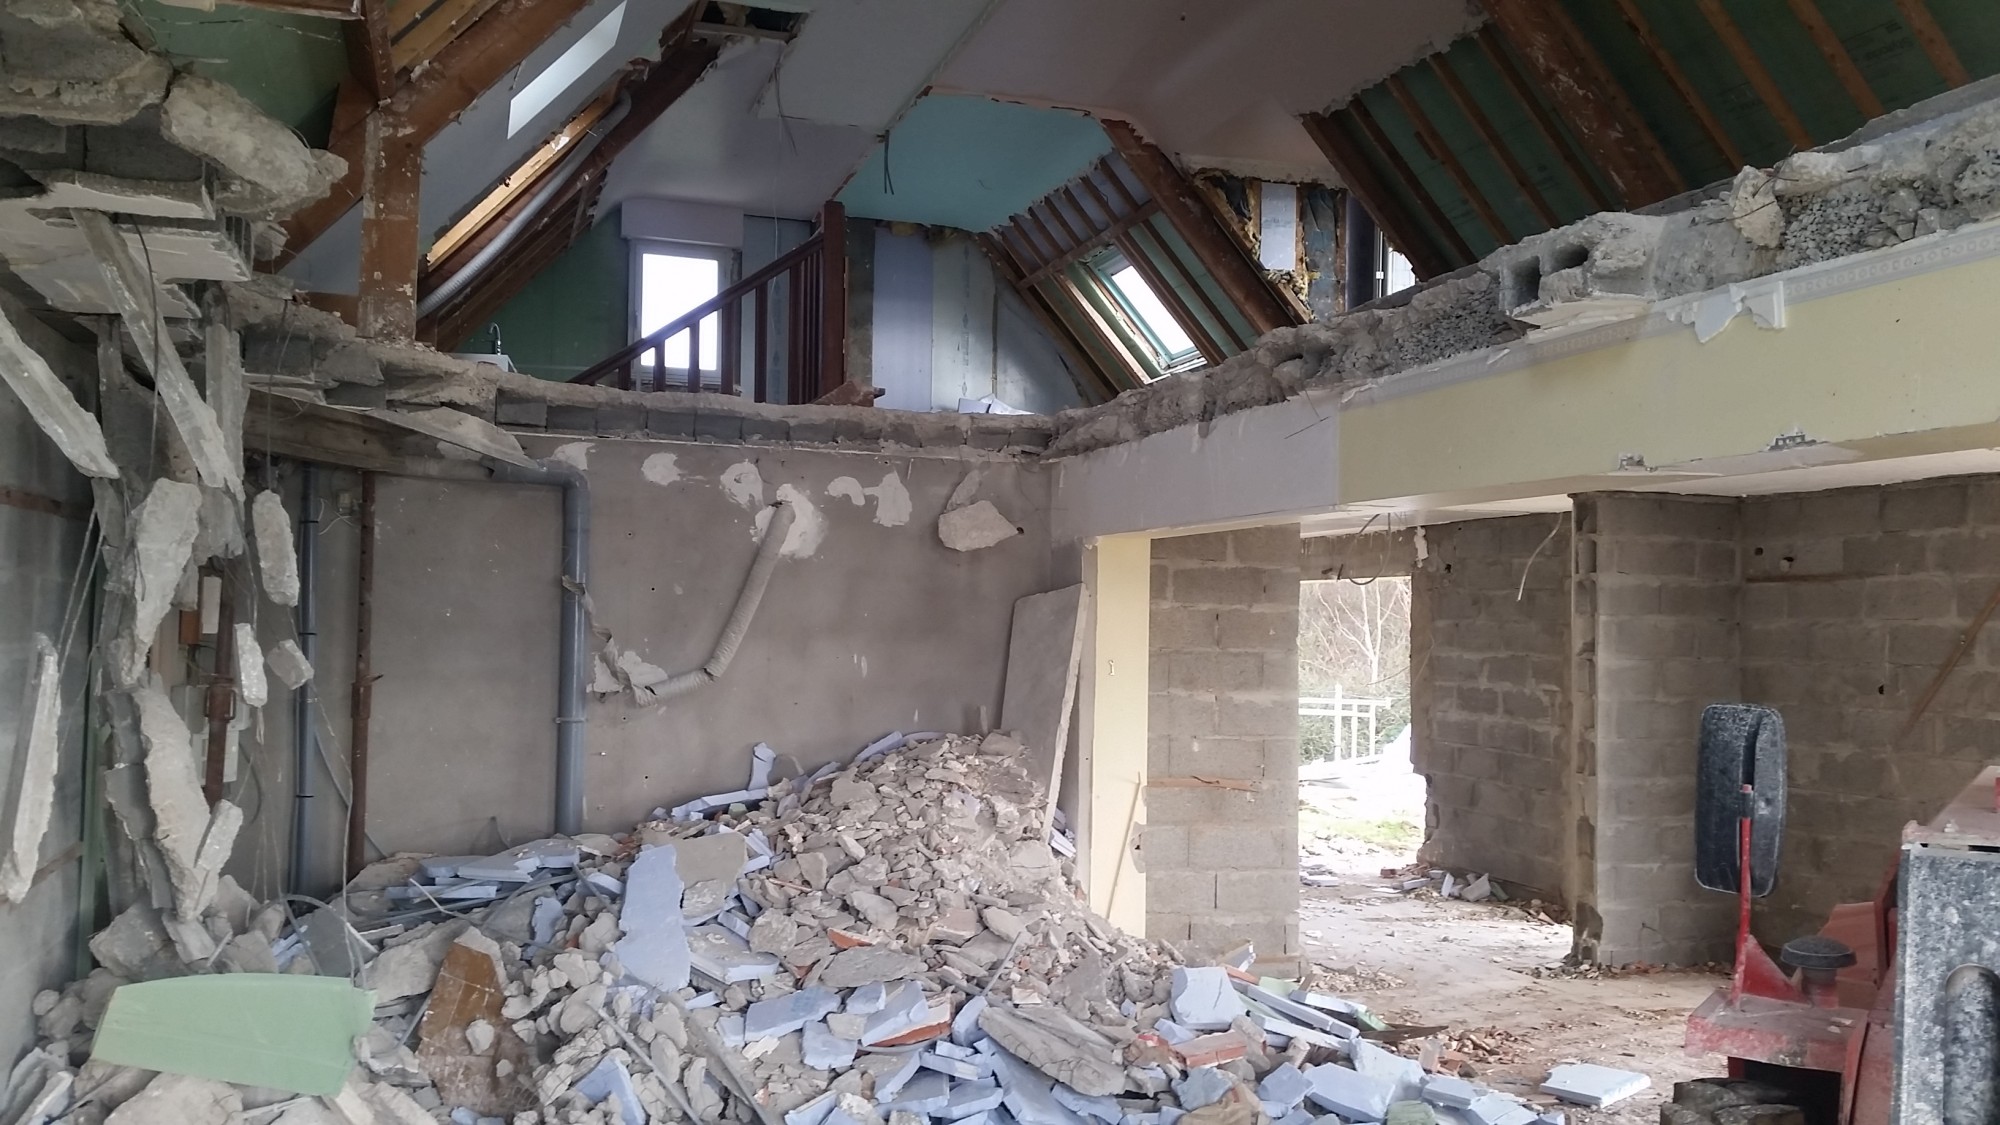 Rénovation chantier ostréicole en habitation individuelle Saint Philibert, Passivéo, démolition